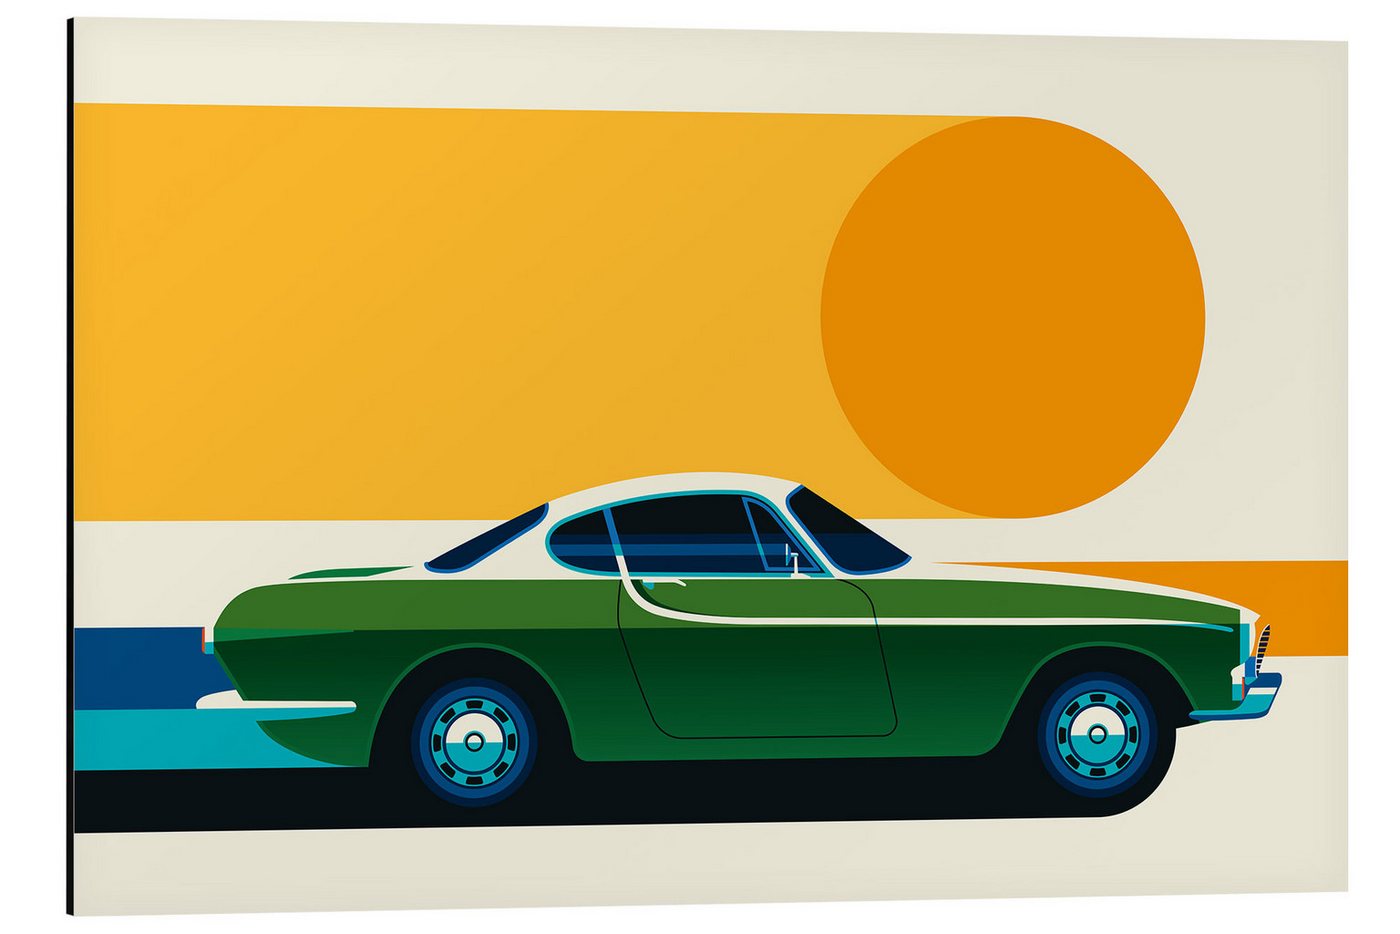 Posterlounge Alu-Dibond-Druck Bo Lundberg, Green vintage sports car side, Lounge Illustration von Posterlounge